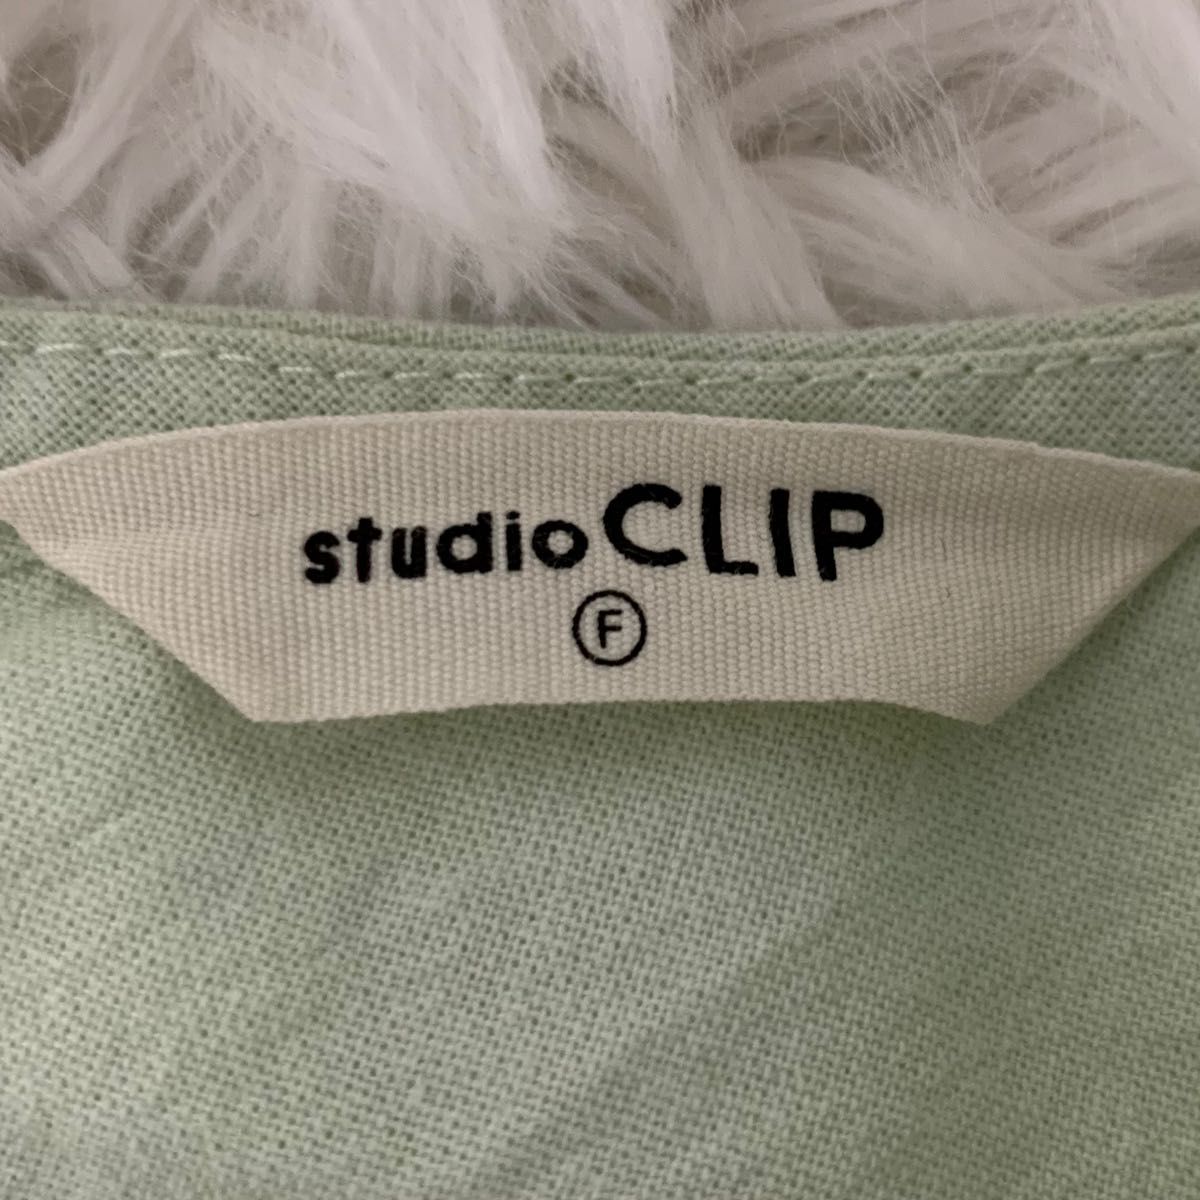 studio CLIP☆プルオーバーチュニック☆ライムグリーン☆コットン・麻☆フリーサイズ☆ゆったり